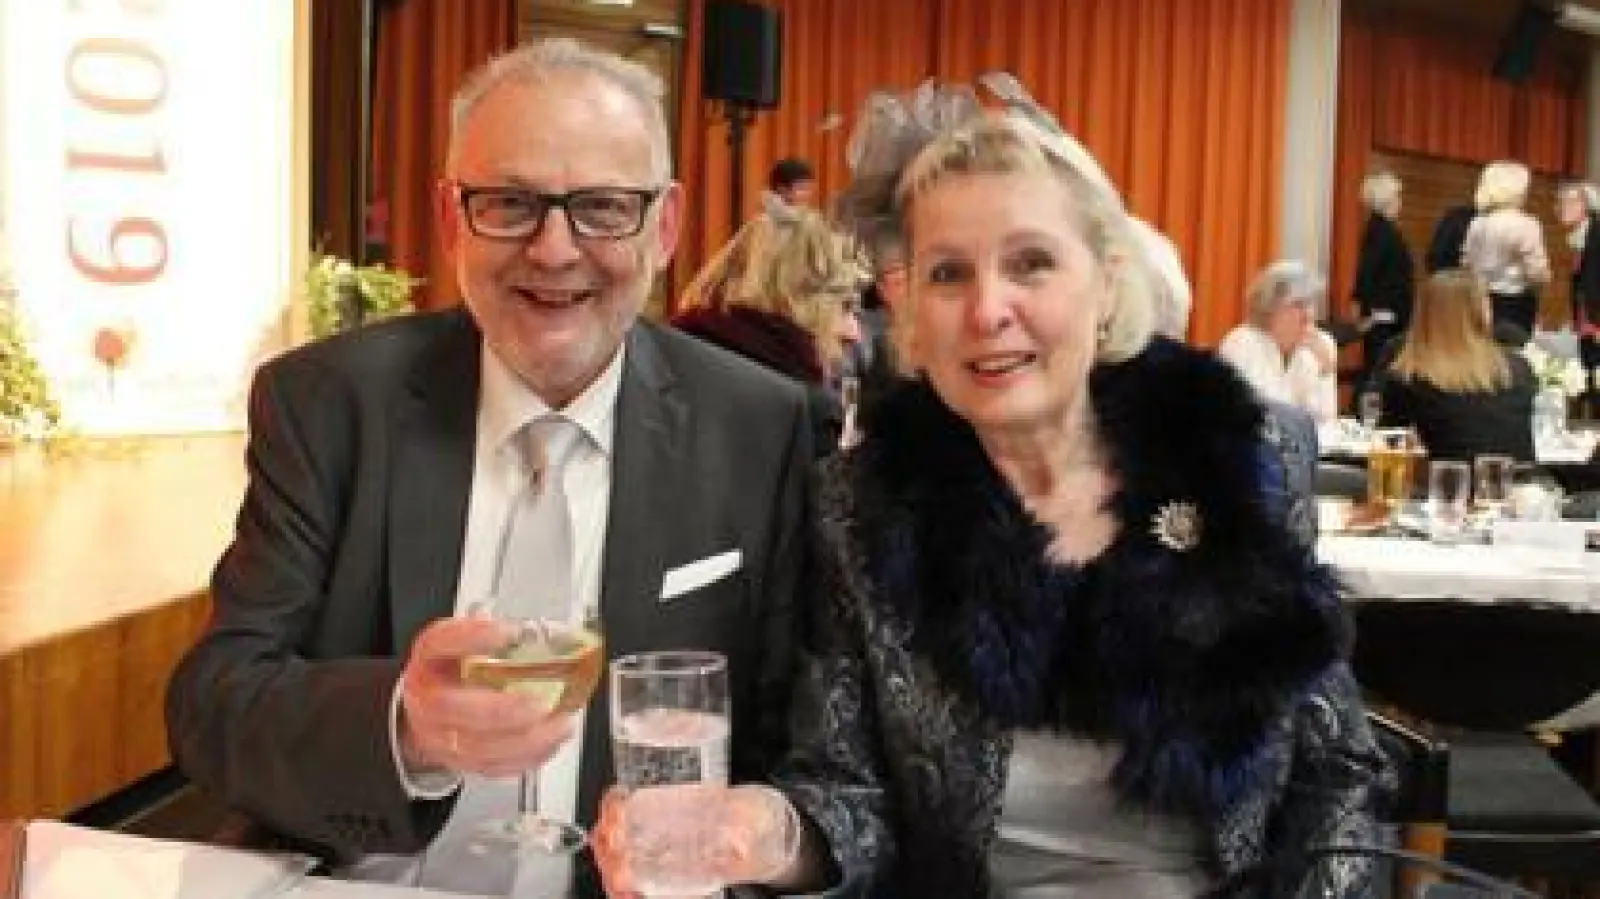 Bürgermeister Klaus Habermann  begrüßte mit Ehefrau Heidi und rund 200 Gästen das neue Jahr, das im Chinesischen Horoskop im Zeichen des Erdschweins steht. Das Erdschein bringt viel Freude und mehr Geld.